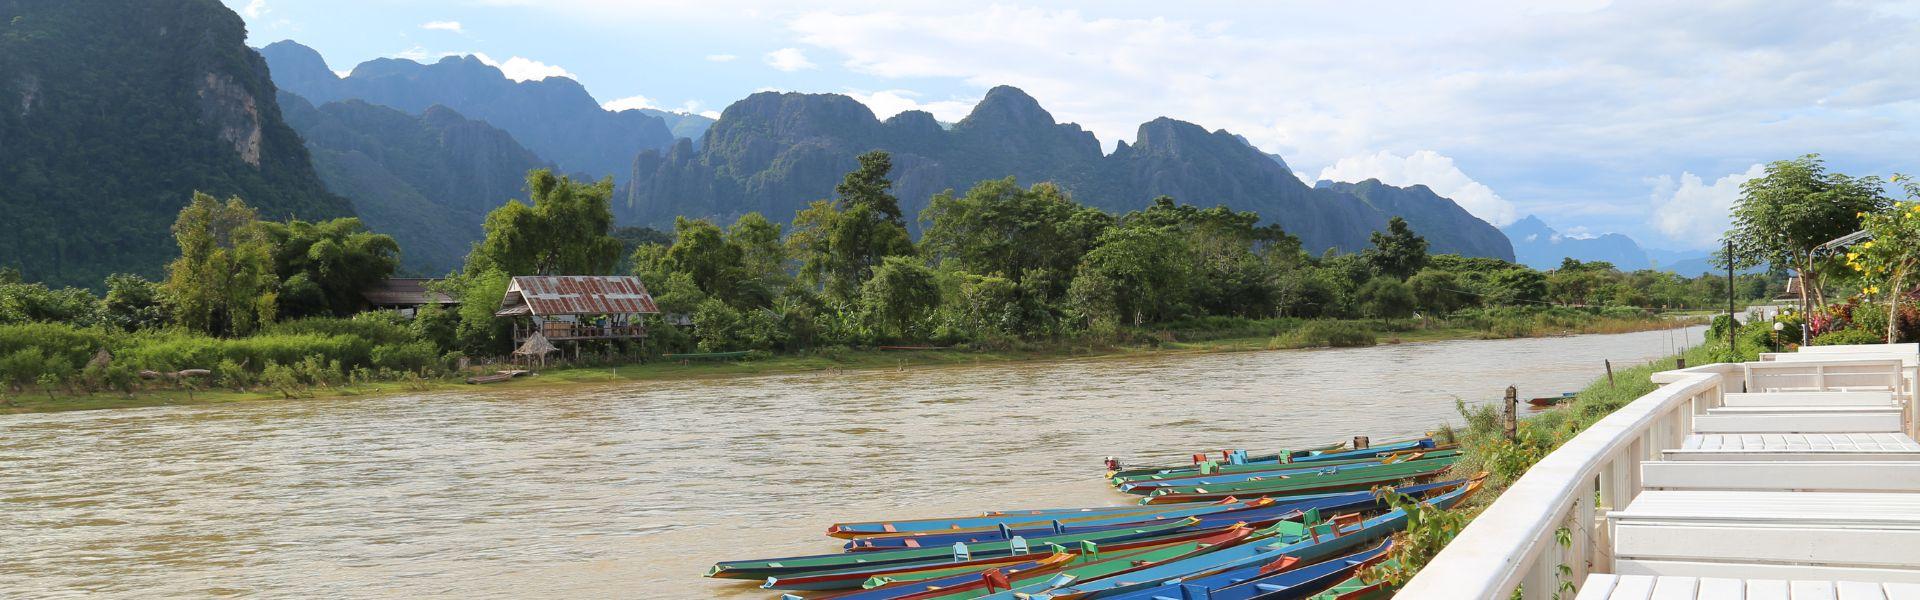 Il periodo migliore per viaggiare in Laos